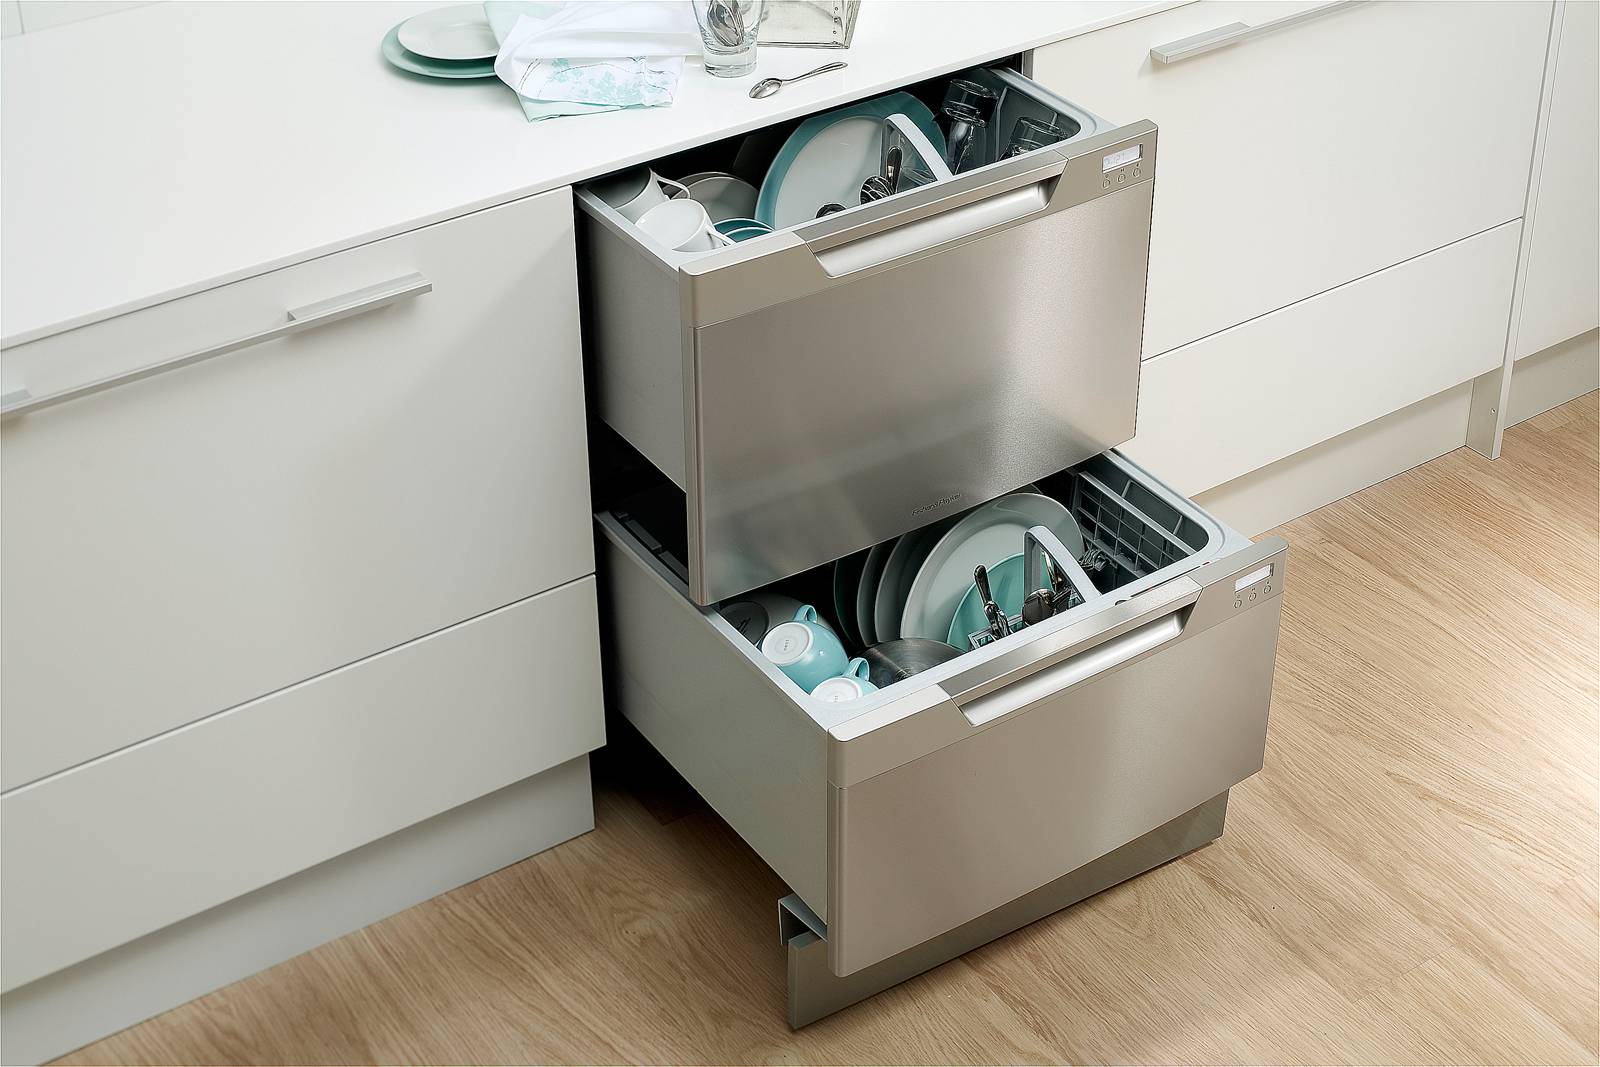 Советы по подбору маленькой узкой посудомоечной машины под раковину: midea mcfd-0606, electrolux esf2200dw, bosch sks40e22, bosch sks62e88